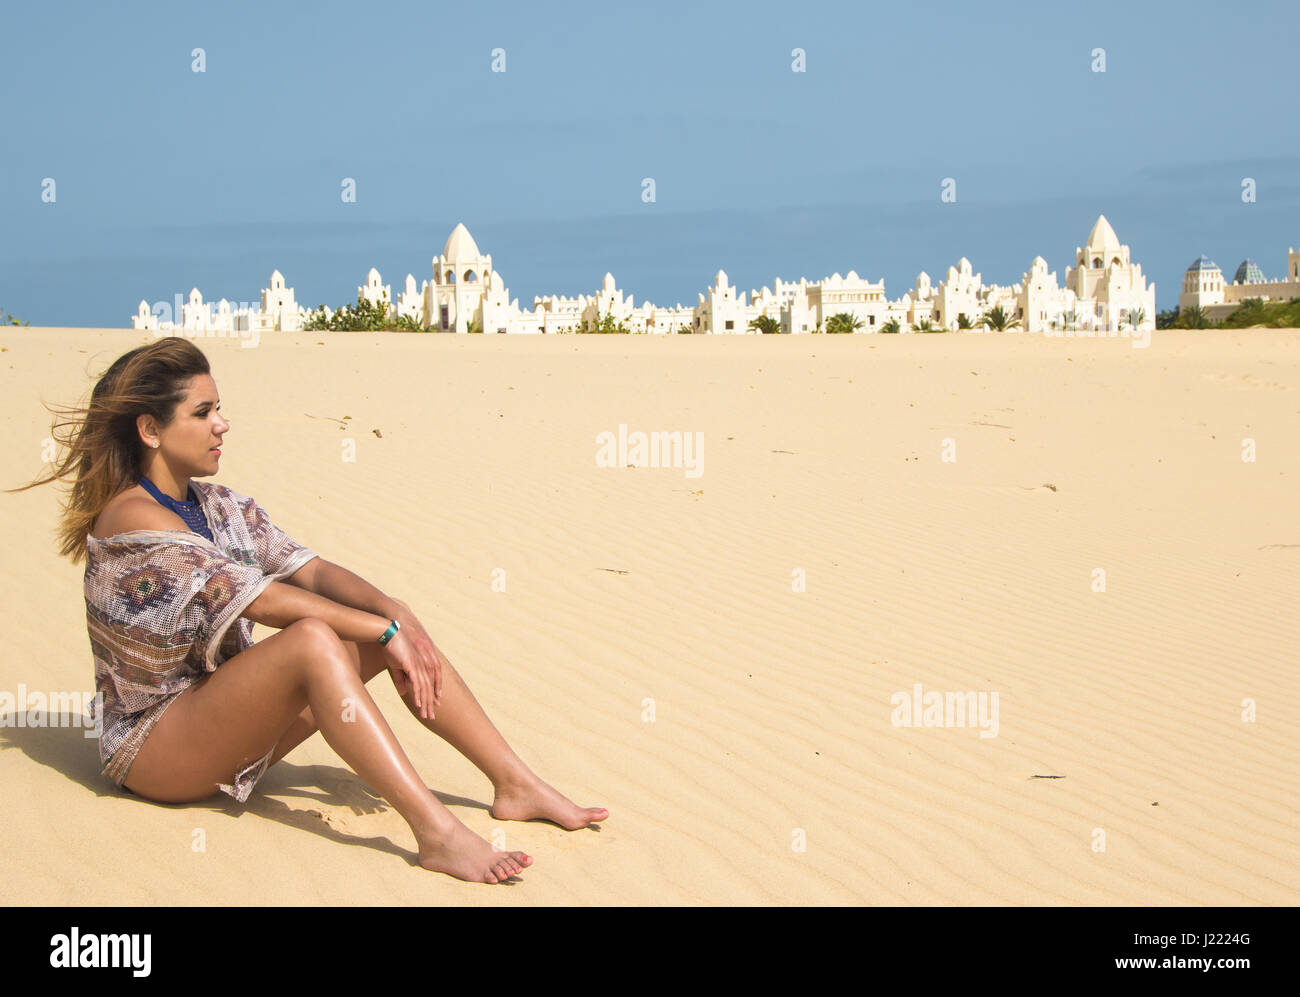 Piuttosto giovani brunette seduto nel deserto con un palazzo sullo sfondo Foto Stock